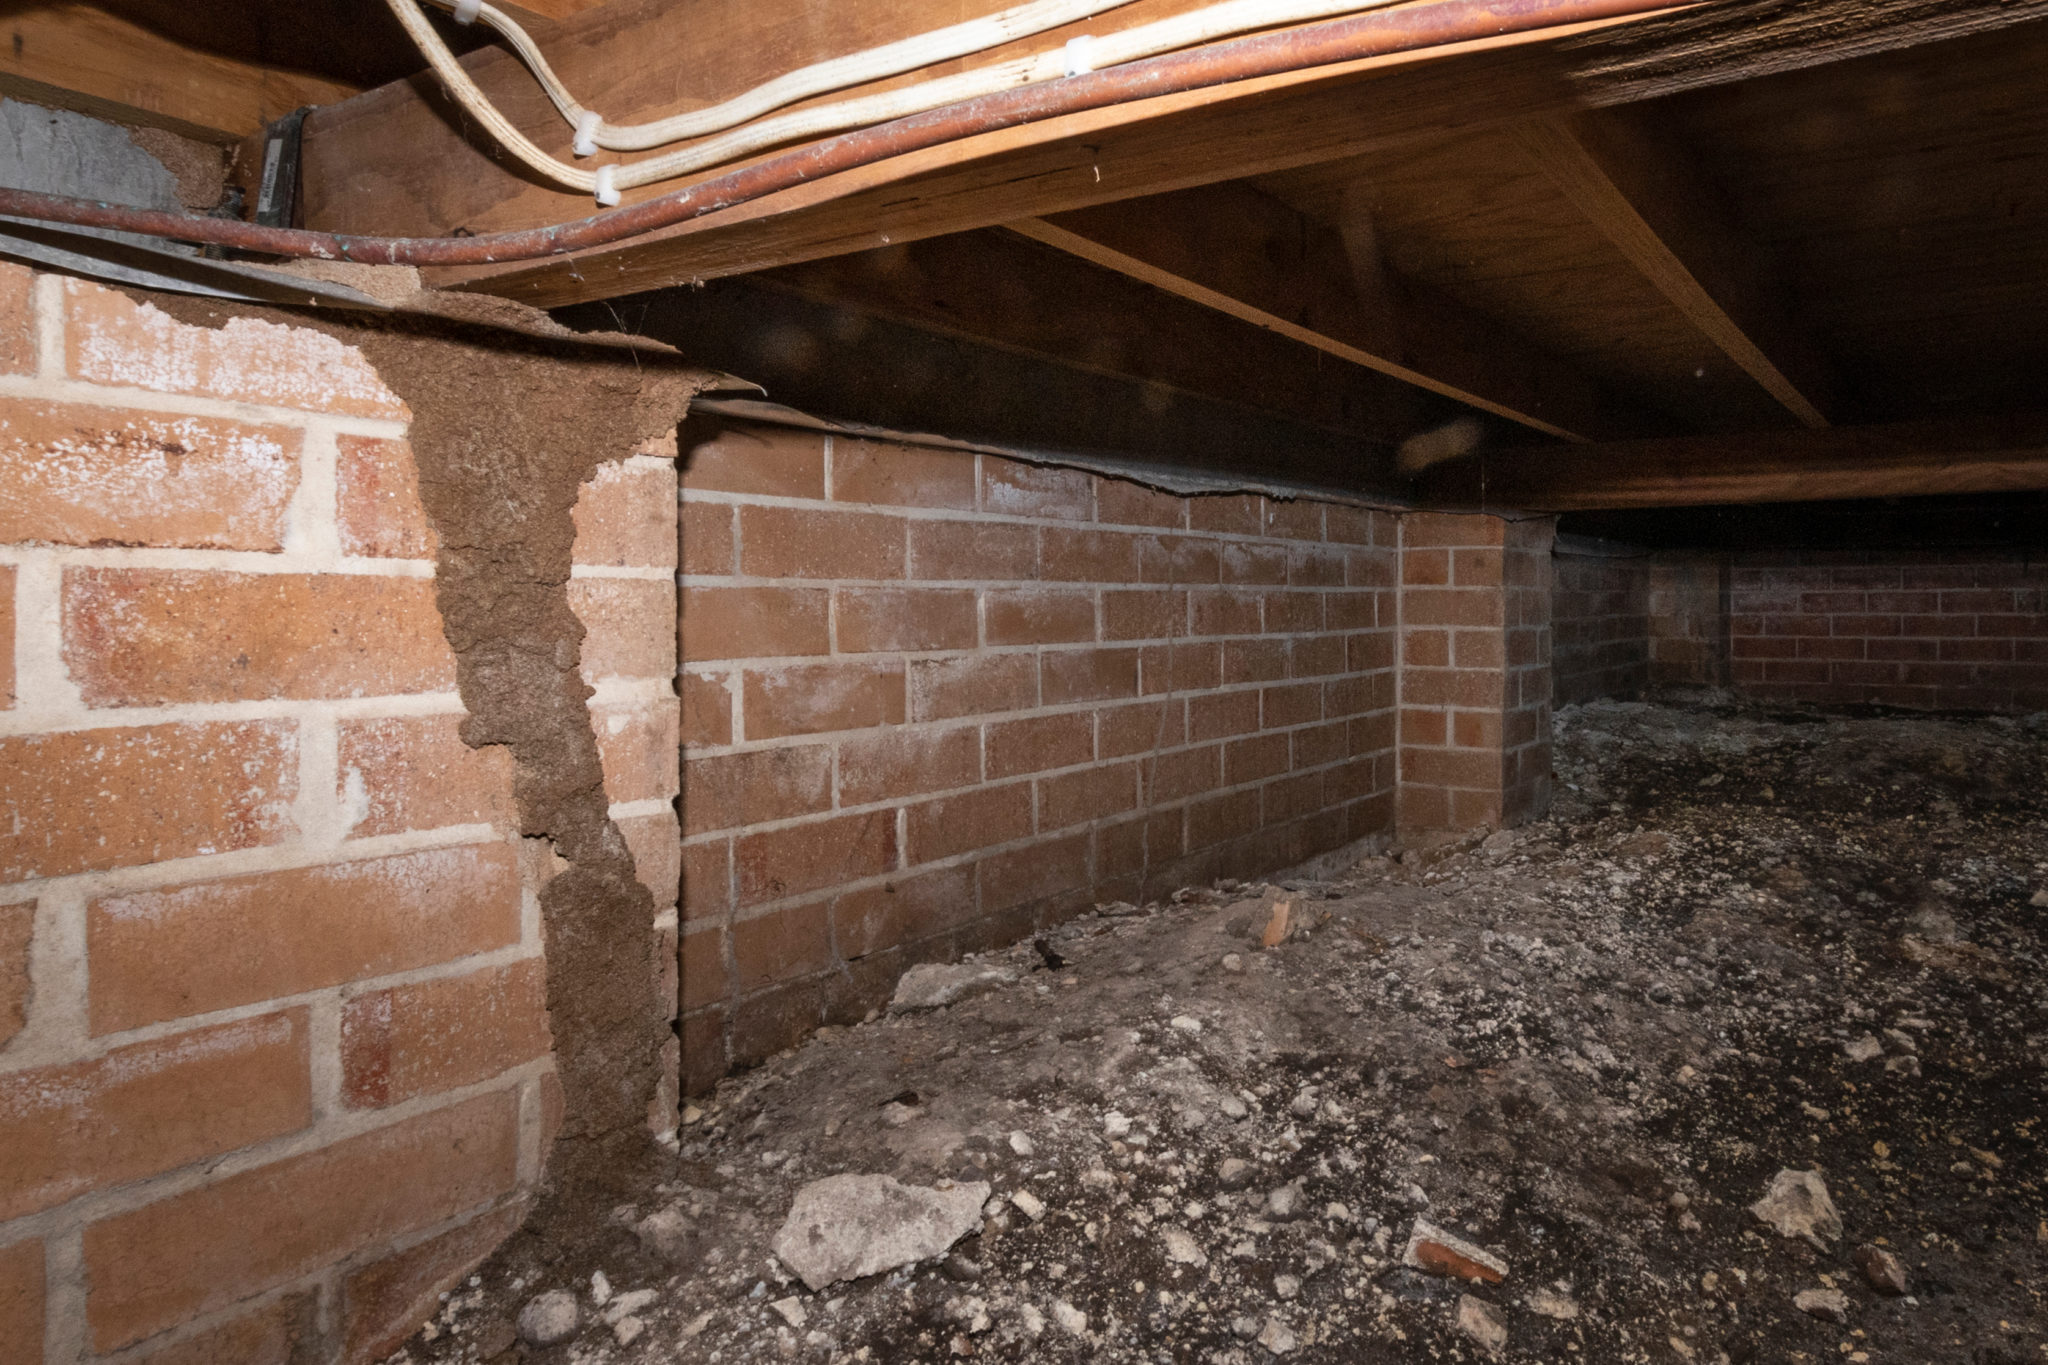 Engadine termite damage to subfloor of home